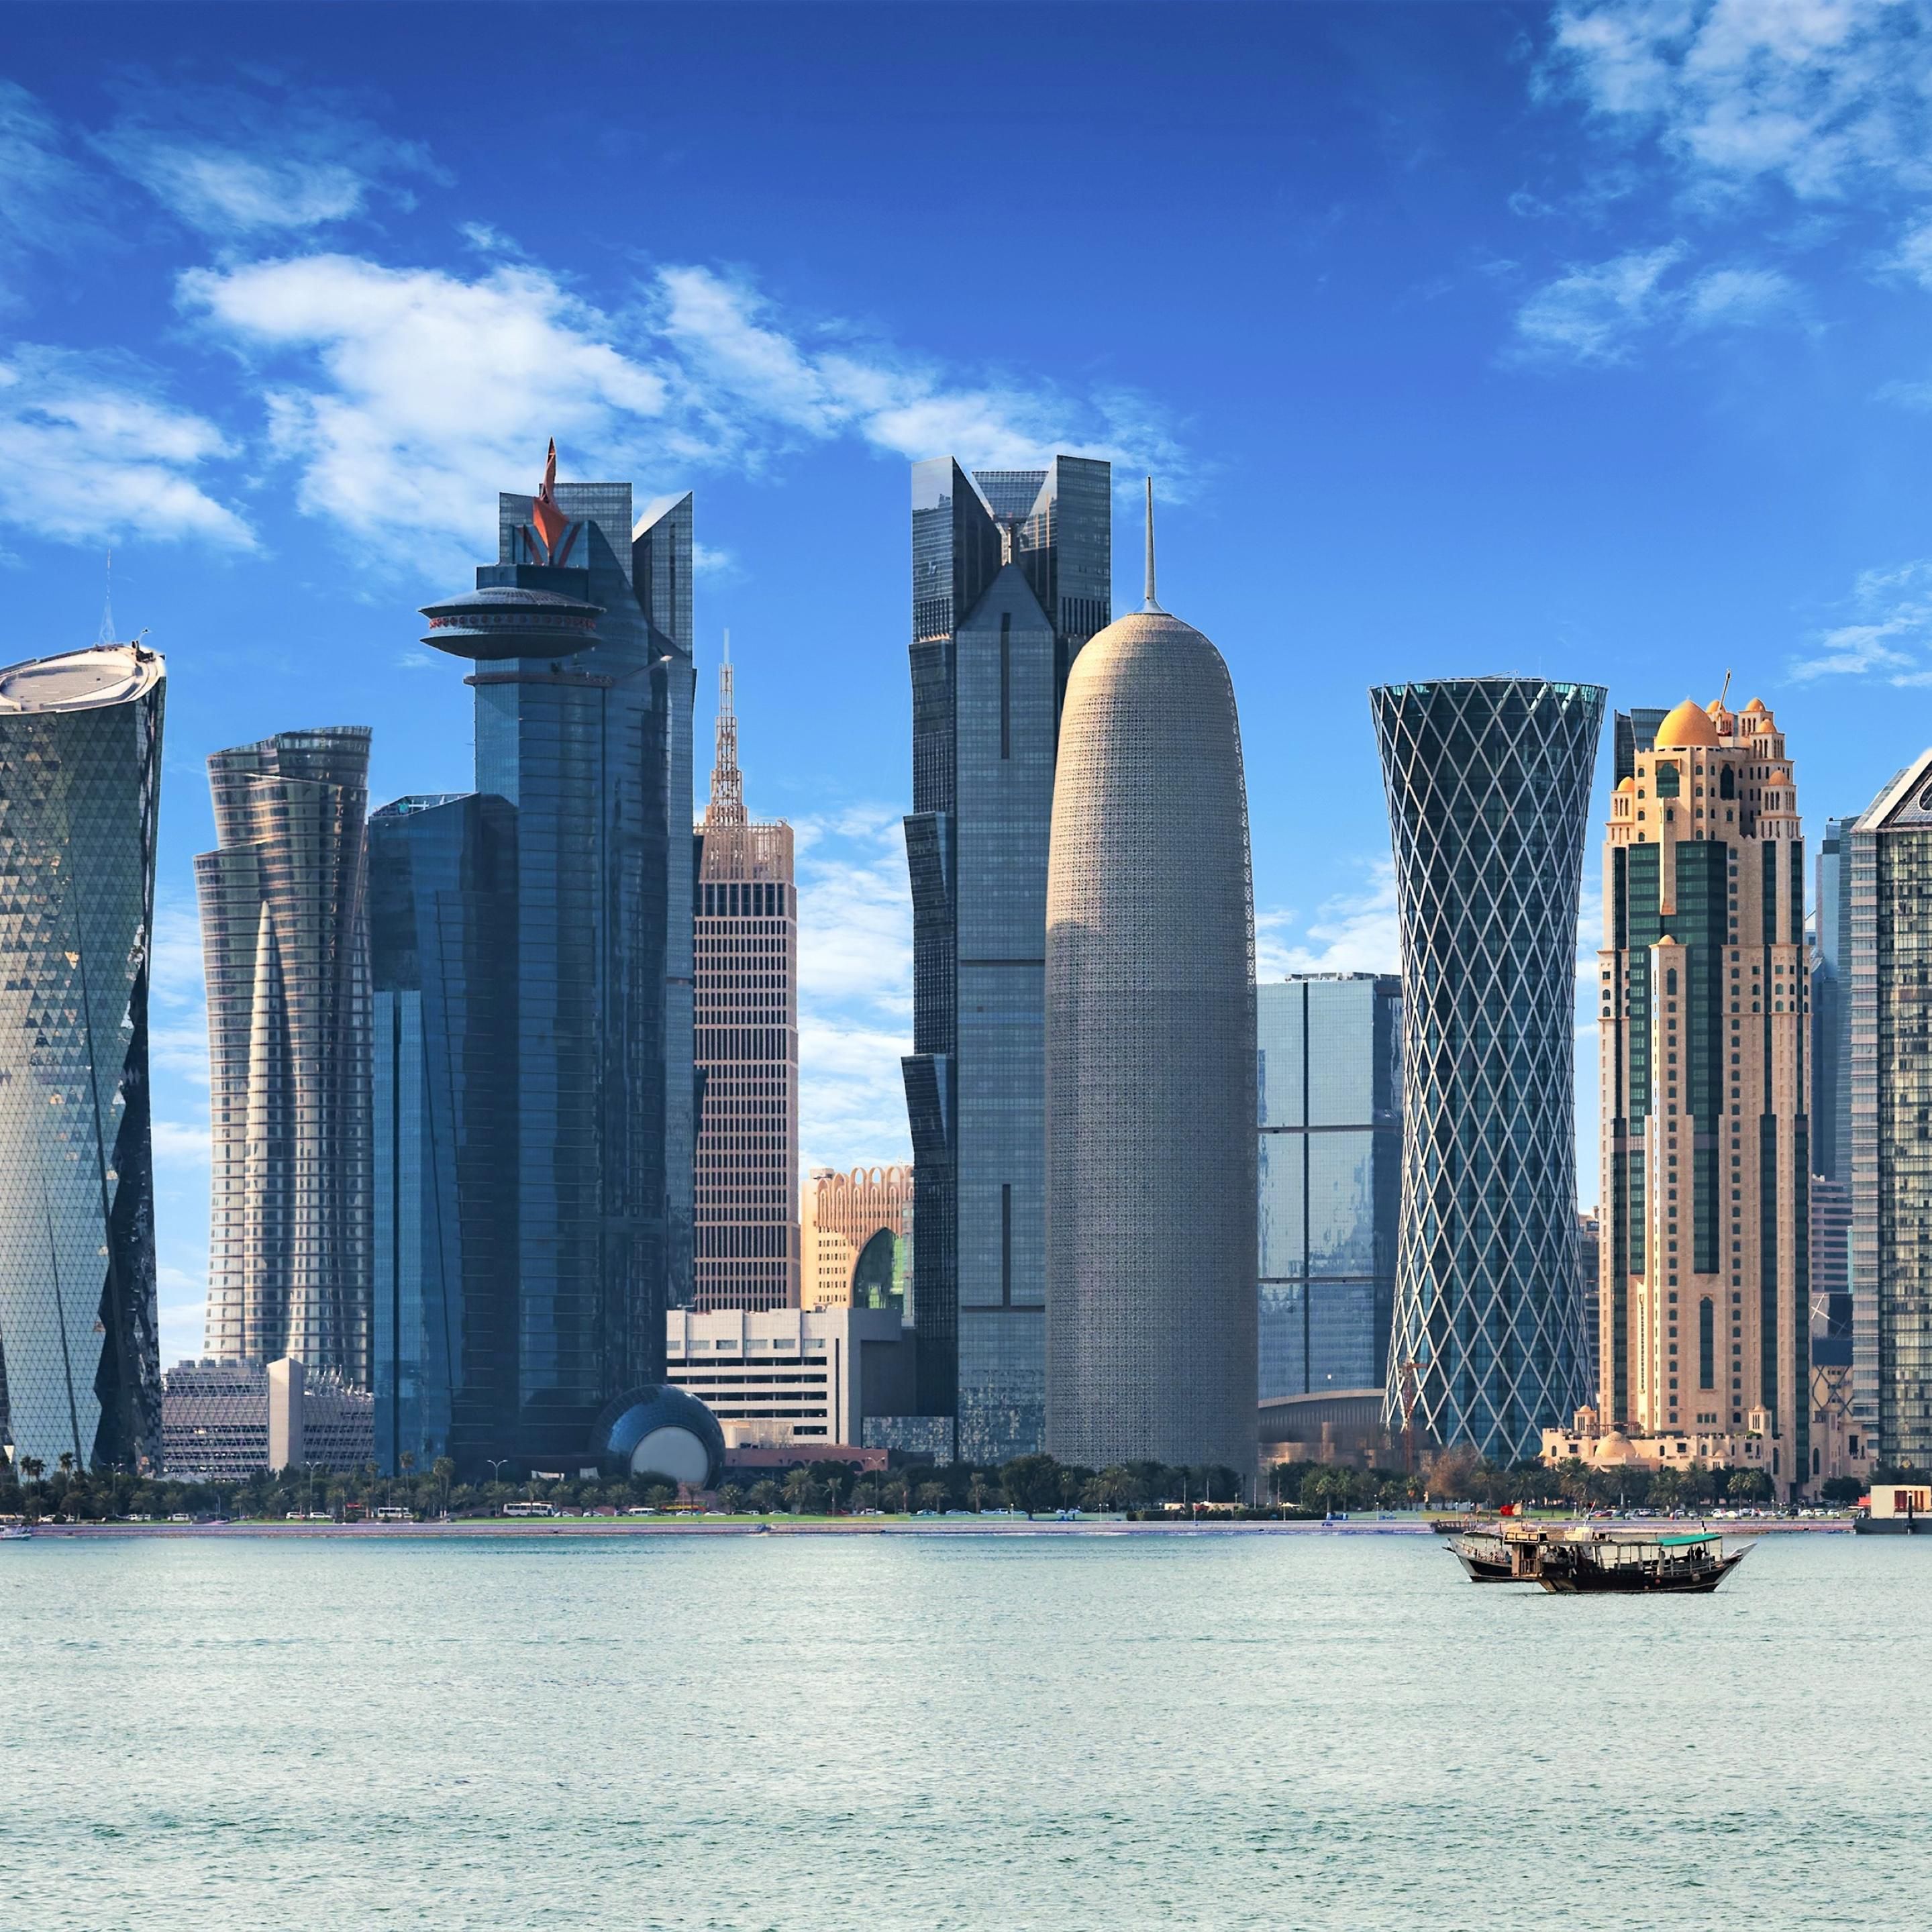 Take a walk along Doha Corniche